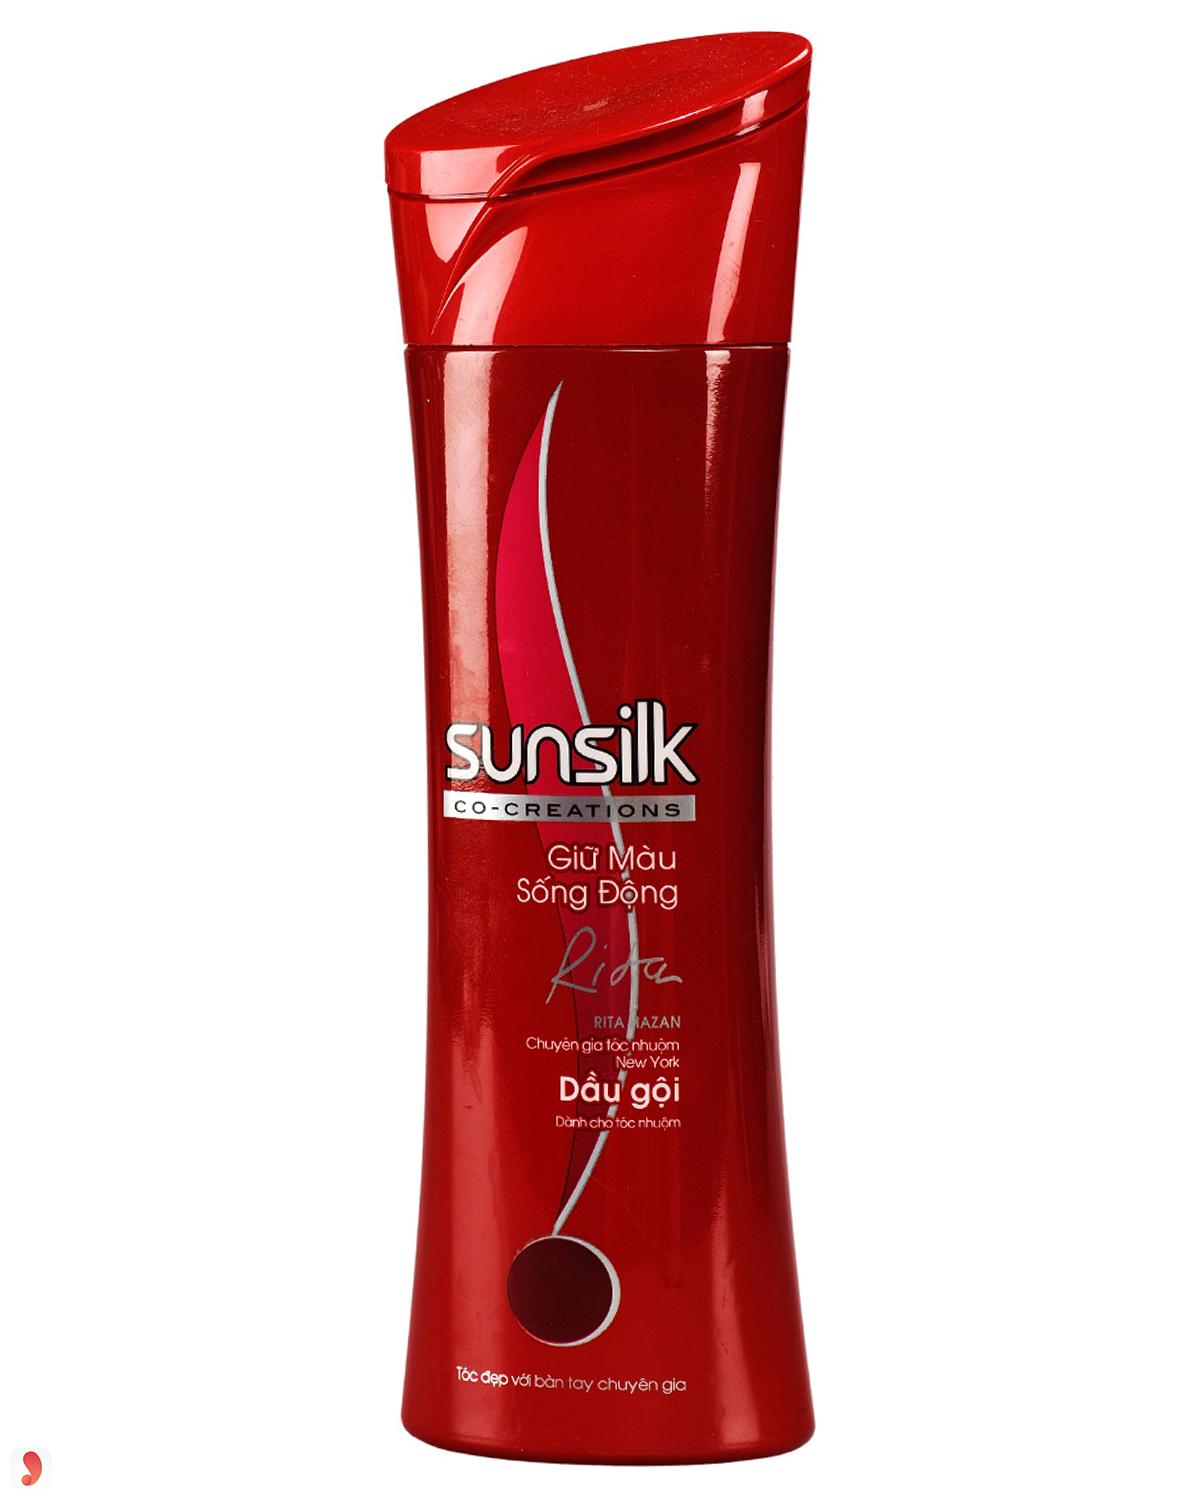 dầu gội Sunsilk dành cho tóc nhuộm 7